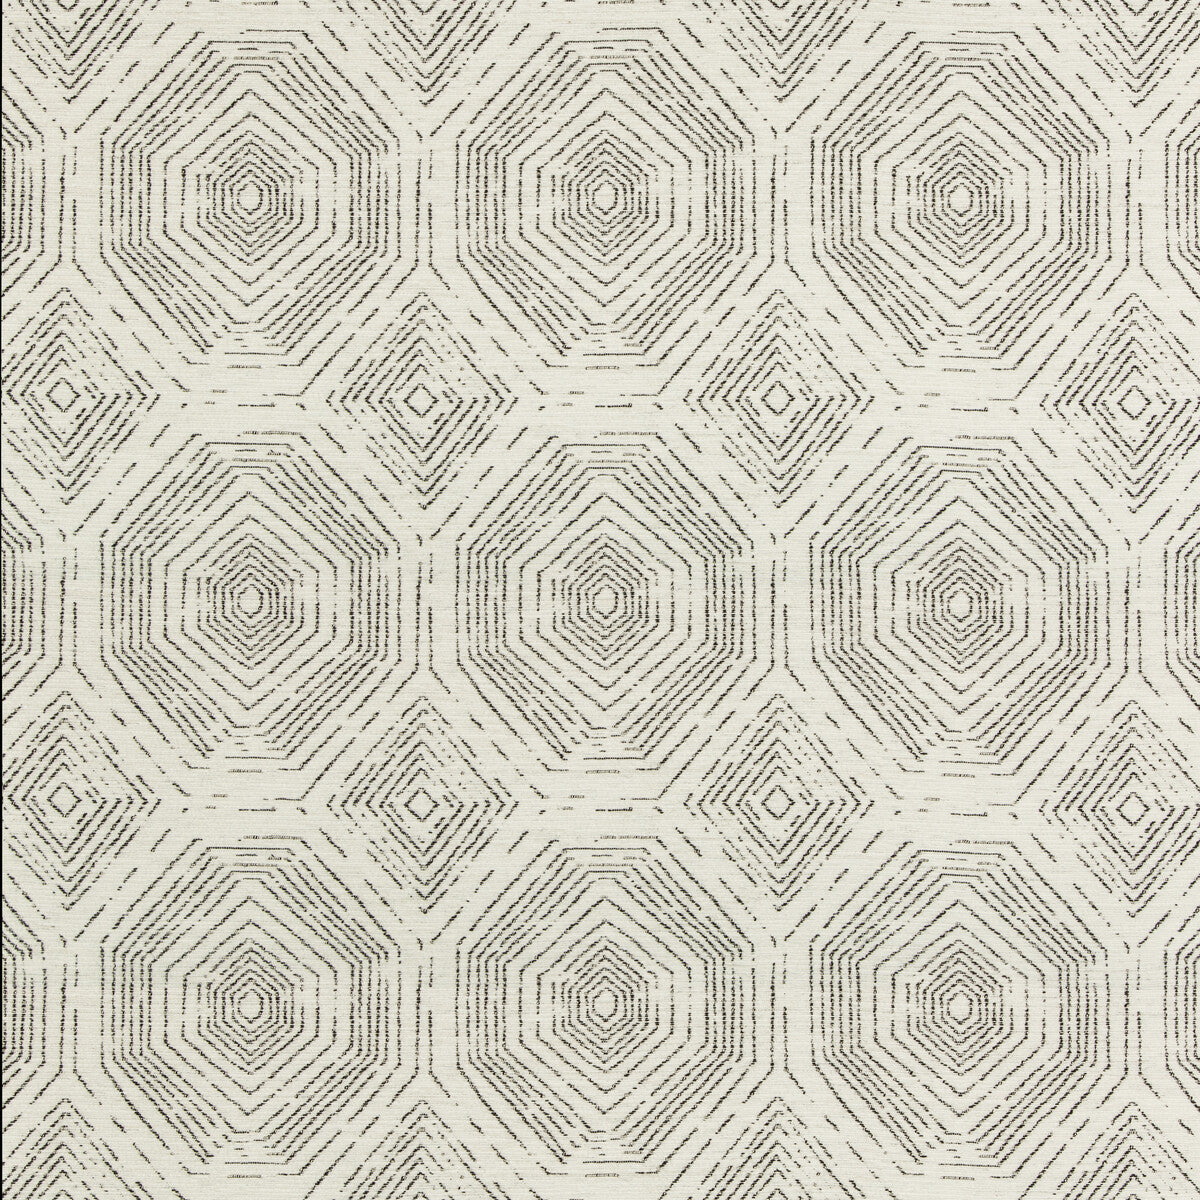 Kravet Design fabric in 35586-81 color - pattern 35586.81.0 - by Kravet Design